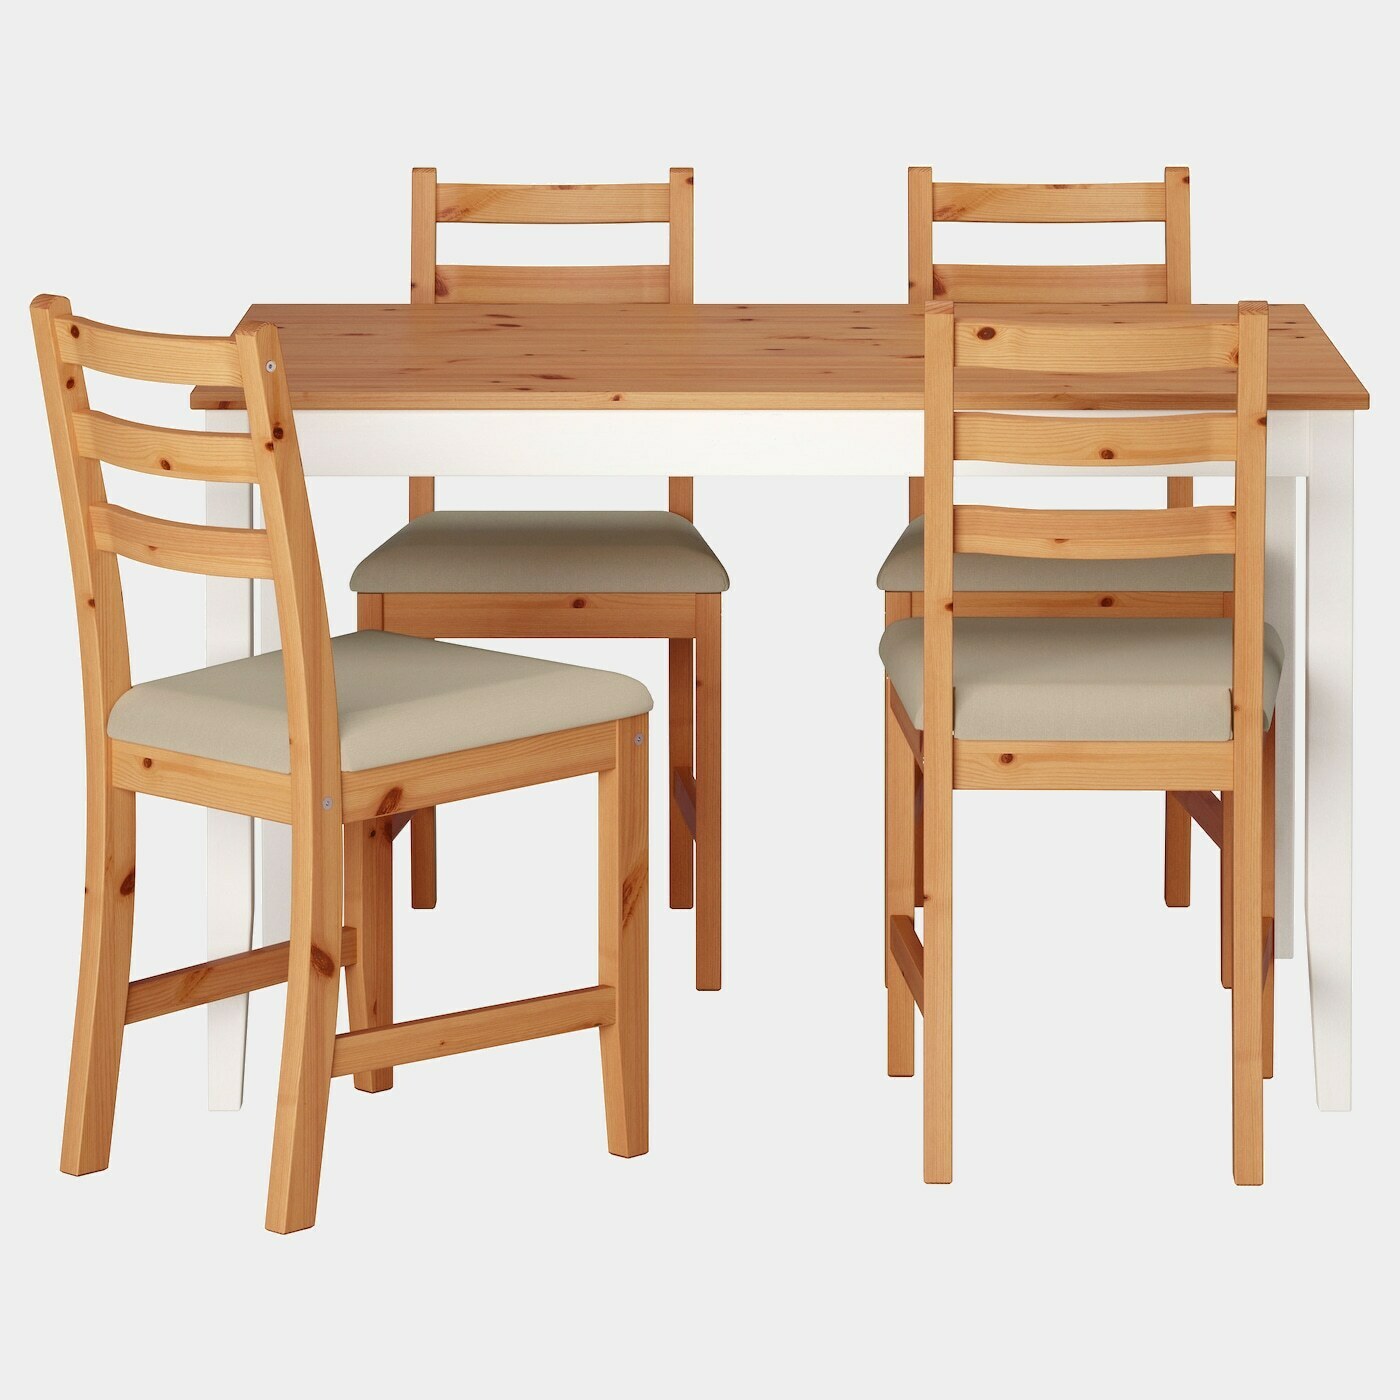 LERHAMN Tisch und 4 Stühle  - Essplatzgruppe - Möbel Ideen für dein Zuhause von Home Trends. Möbel Trends von Social Media Influencer für dein Skandi Zuhause.